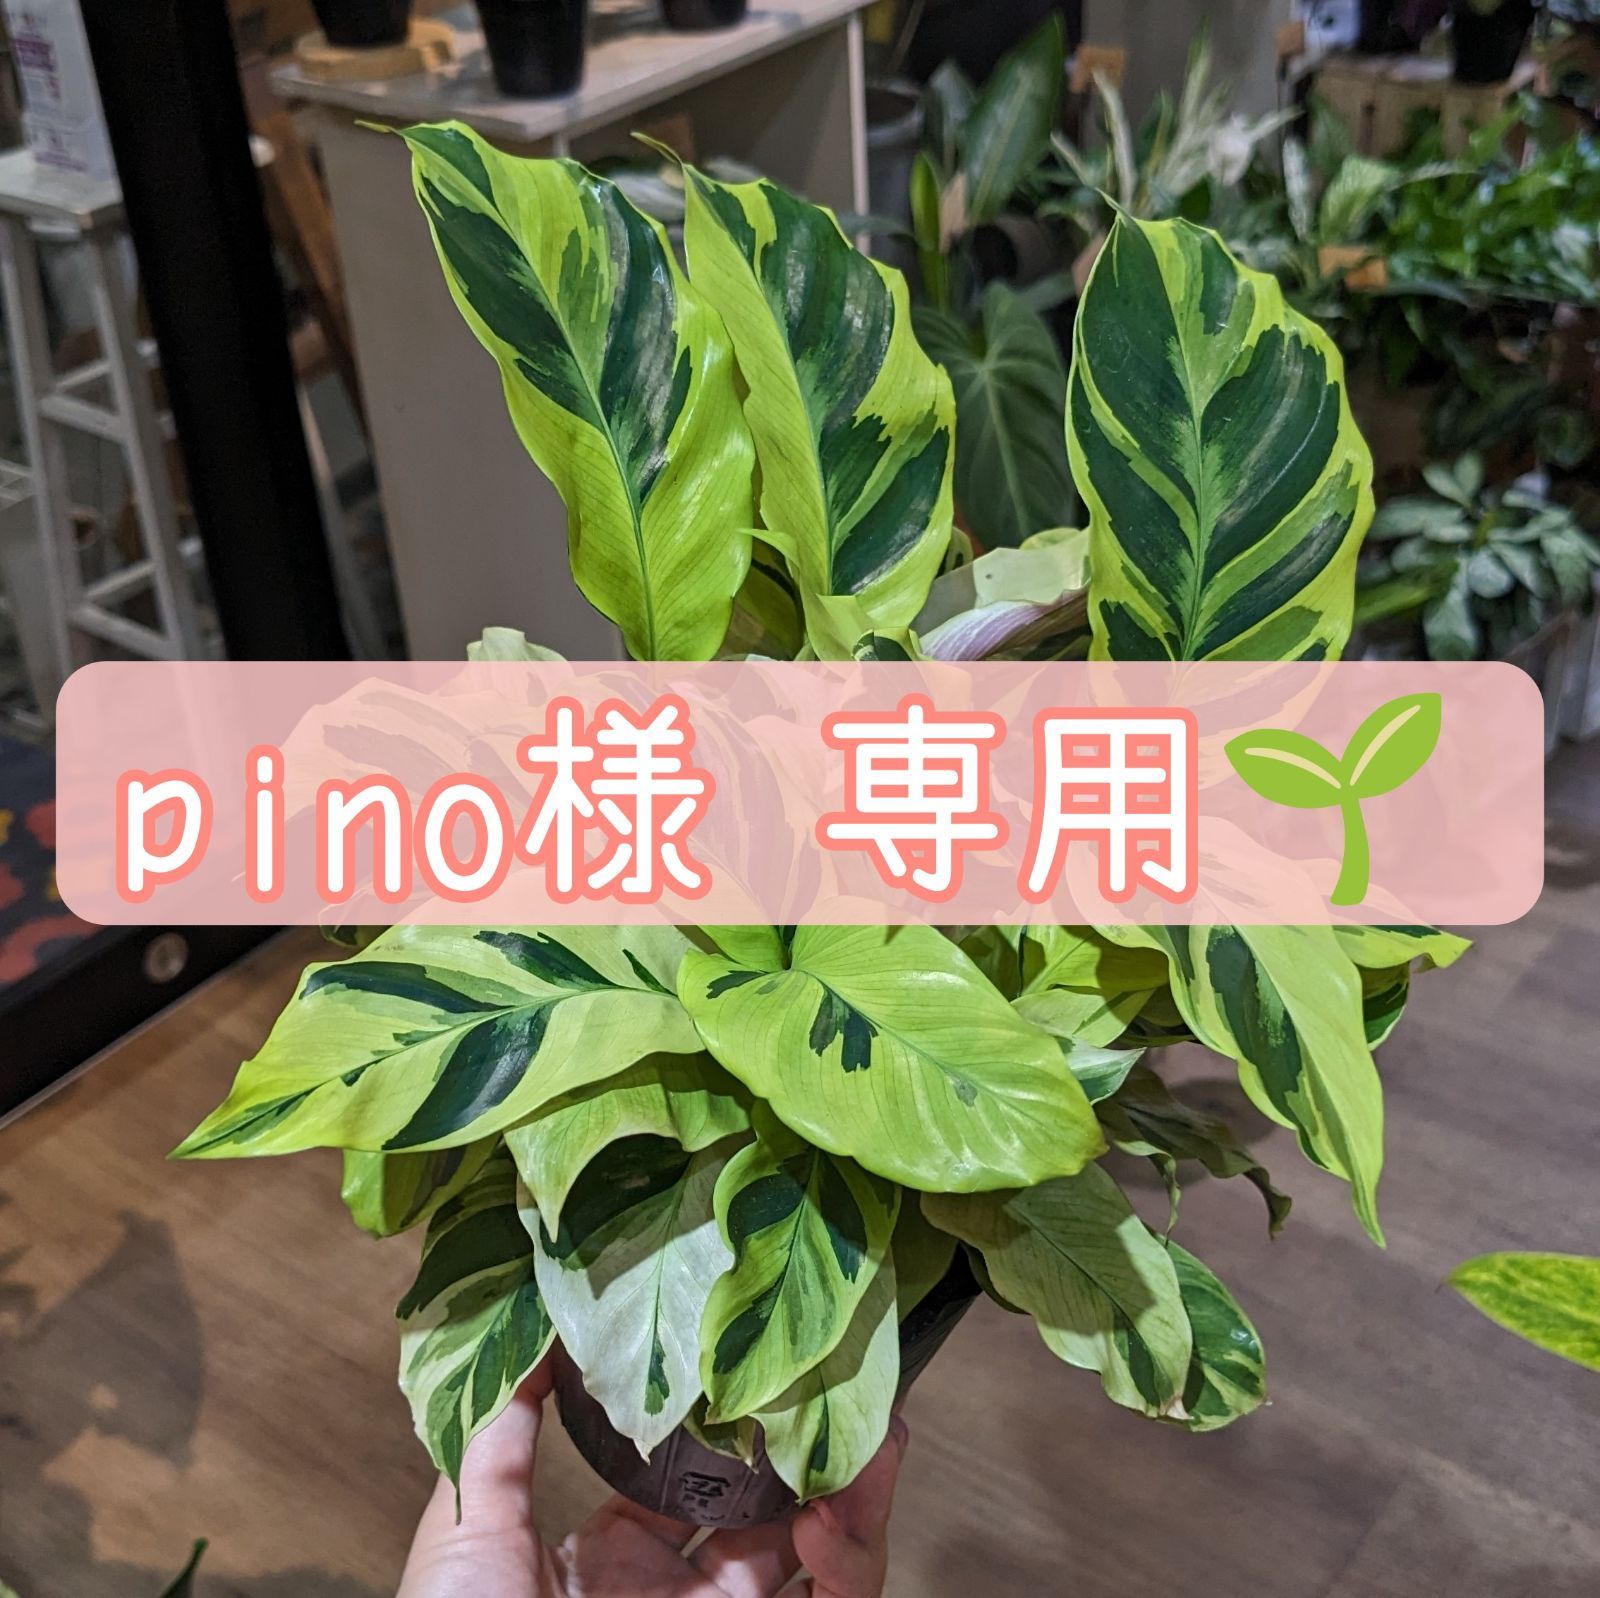 pino様専用ページです☆ - 植物と犬服のお店NOKO's - メルカリ